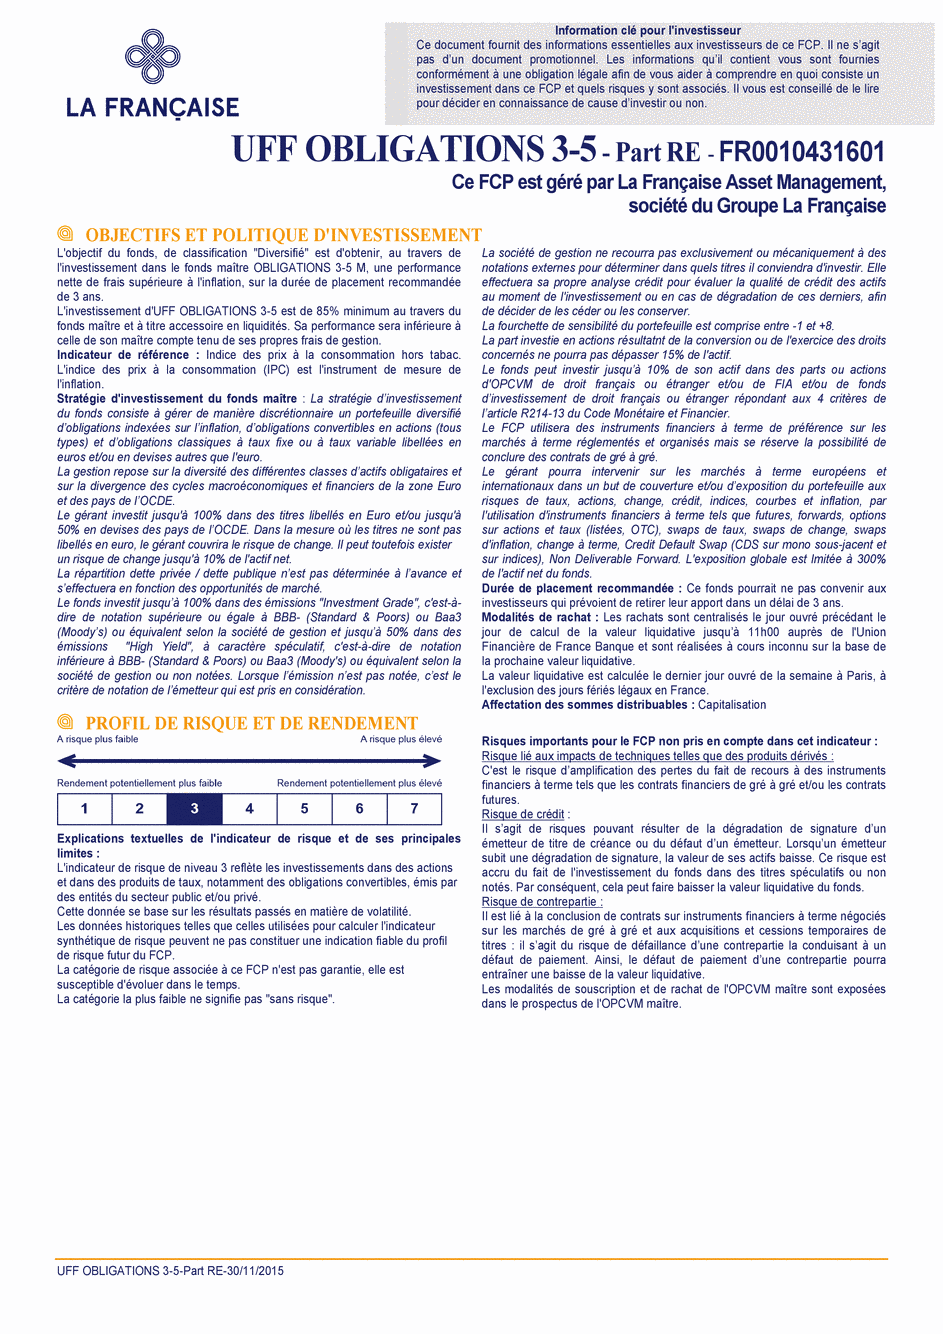 DICI UFF Obligations 3-5 (Part RE) - 30/11/2015 - Français